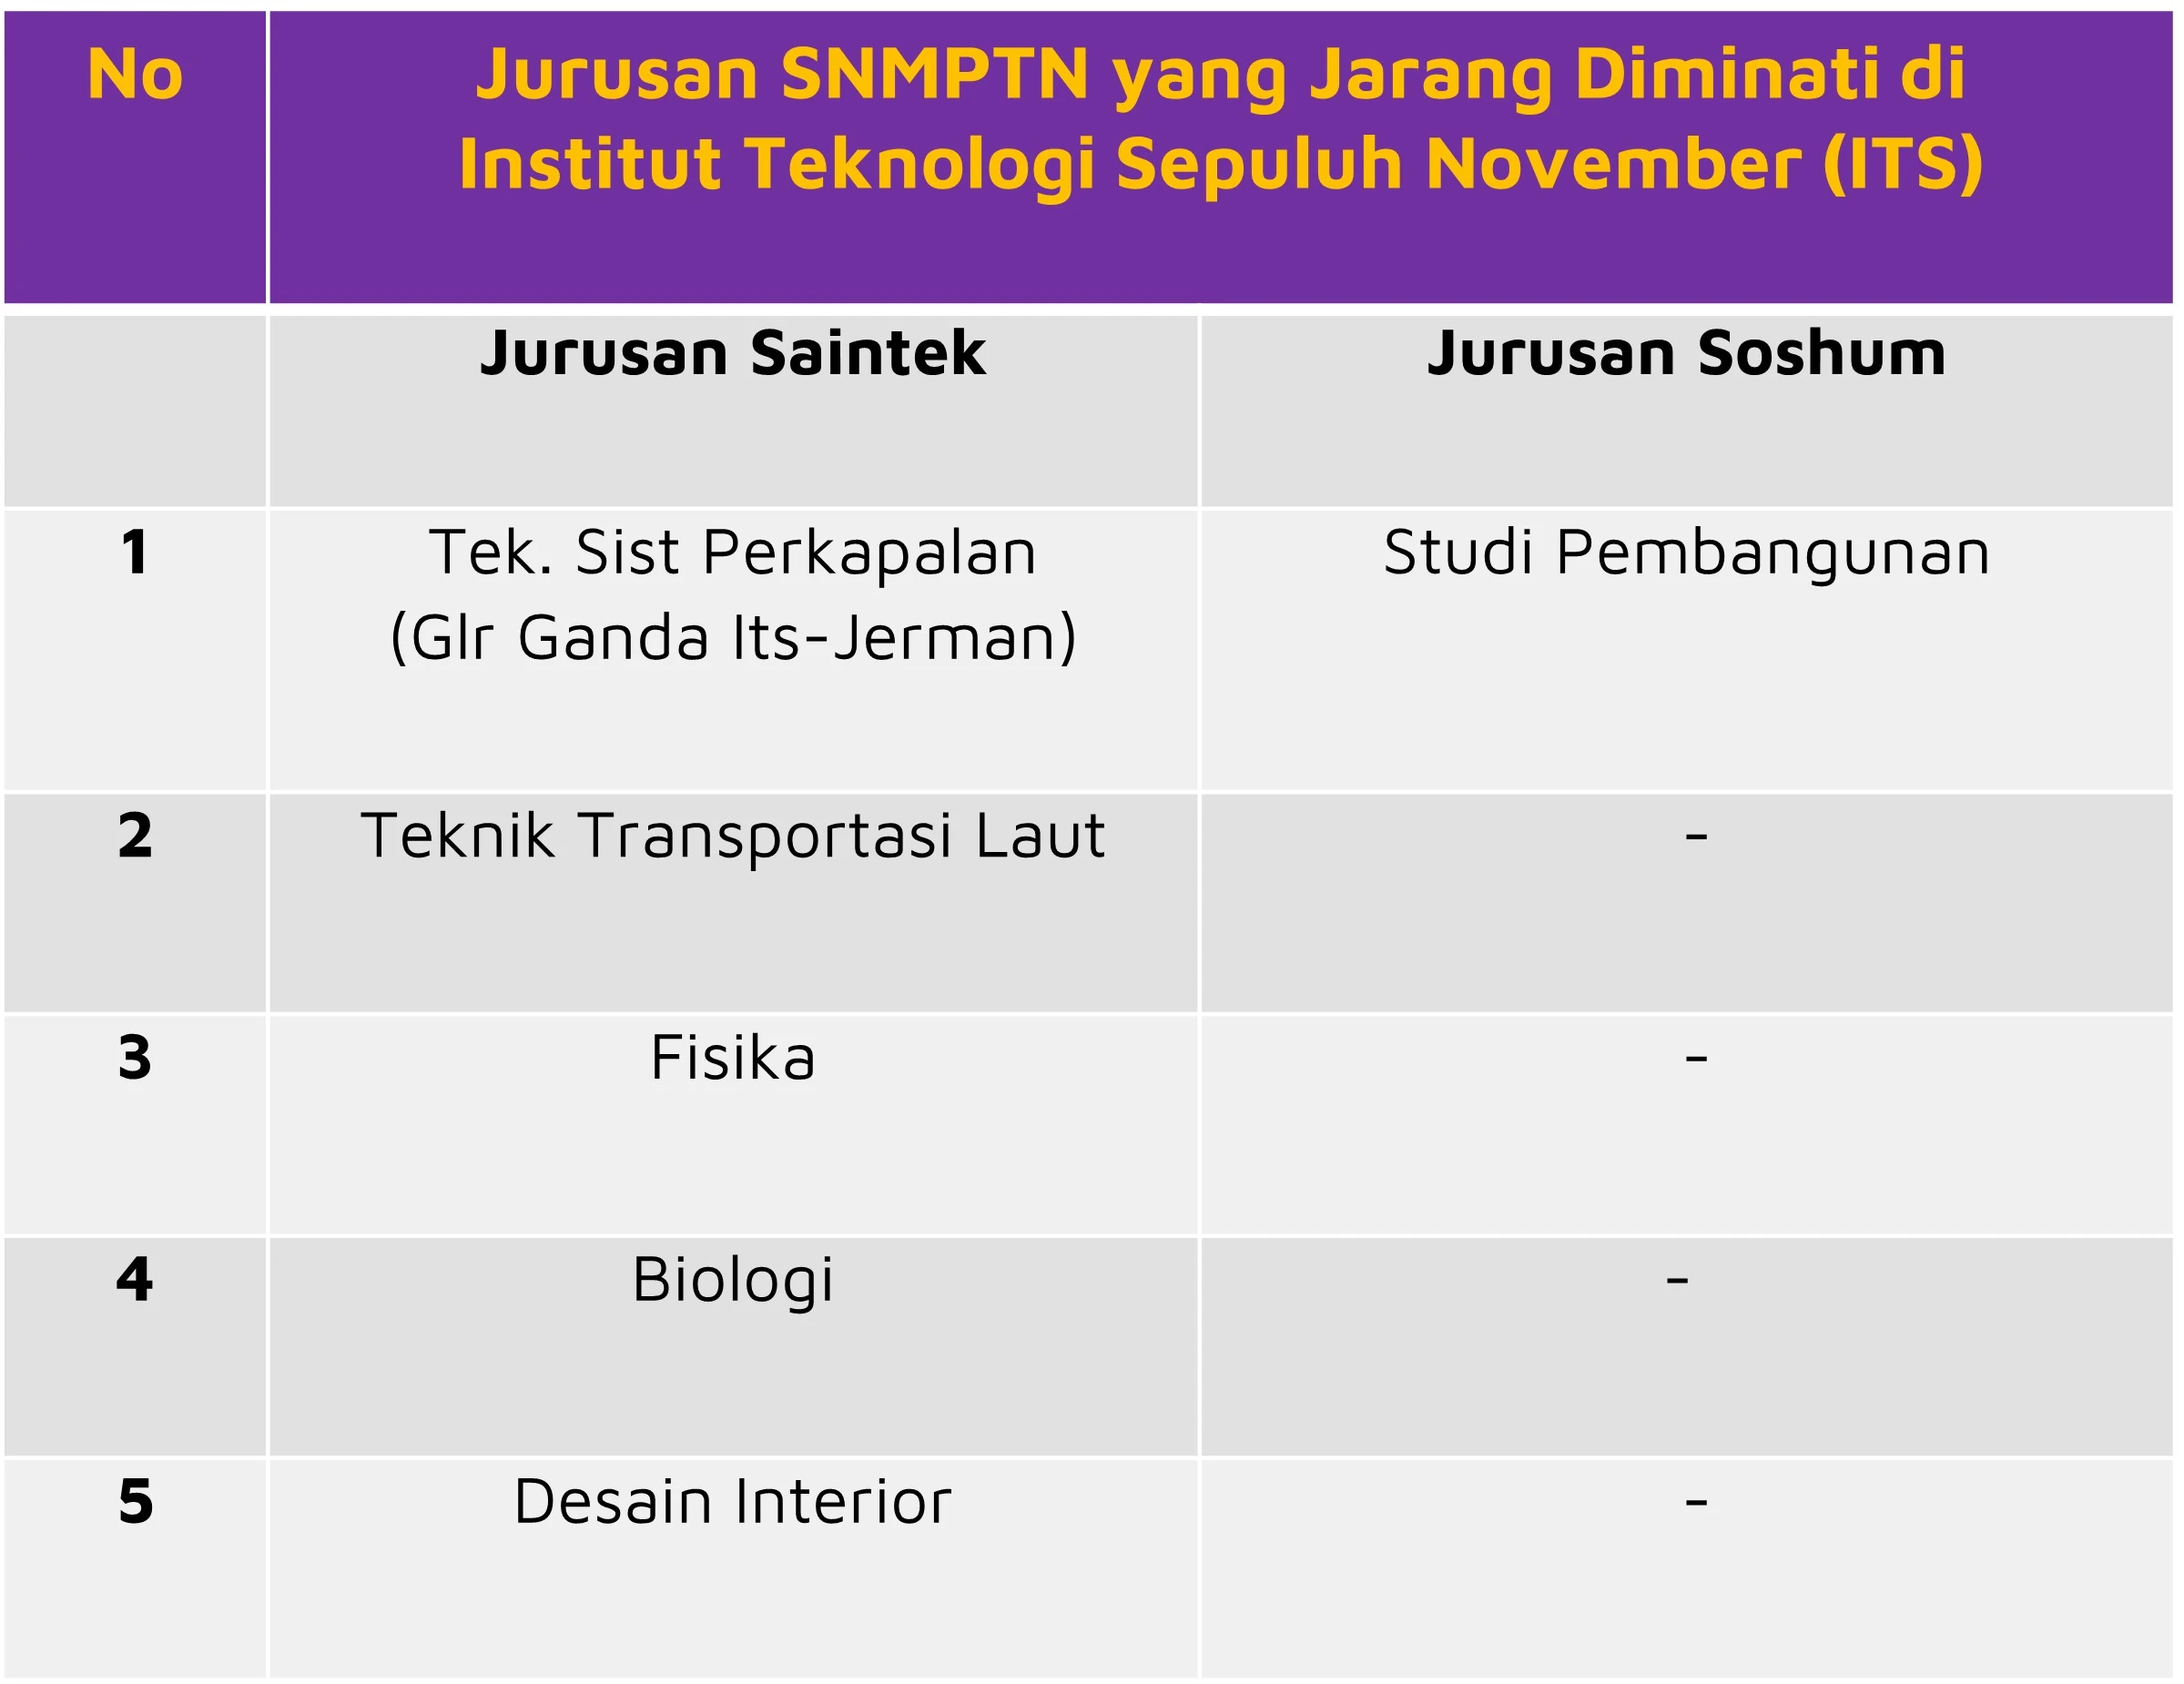 Jurusan SNMPTN yang Jarang Diminati di ITS